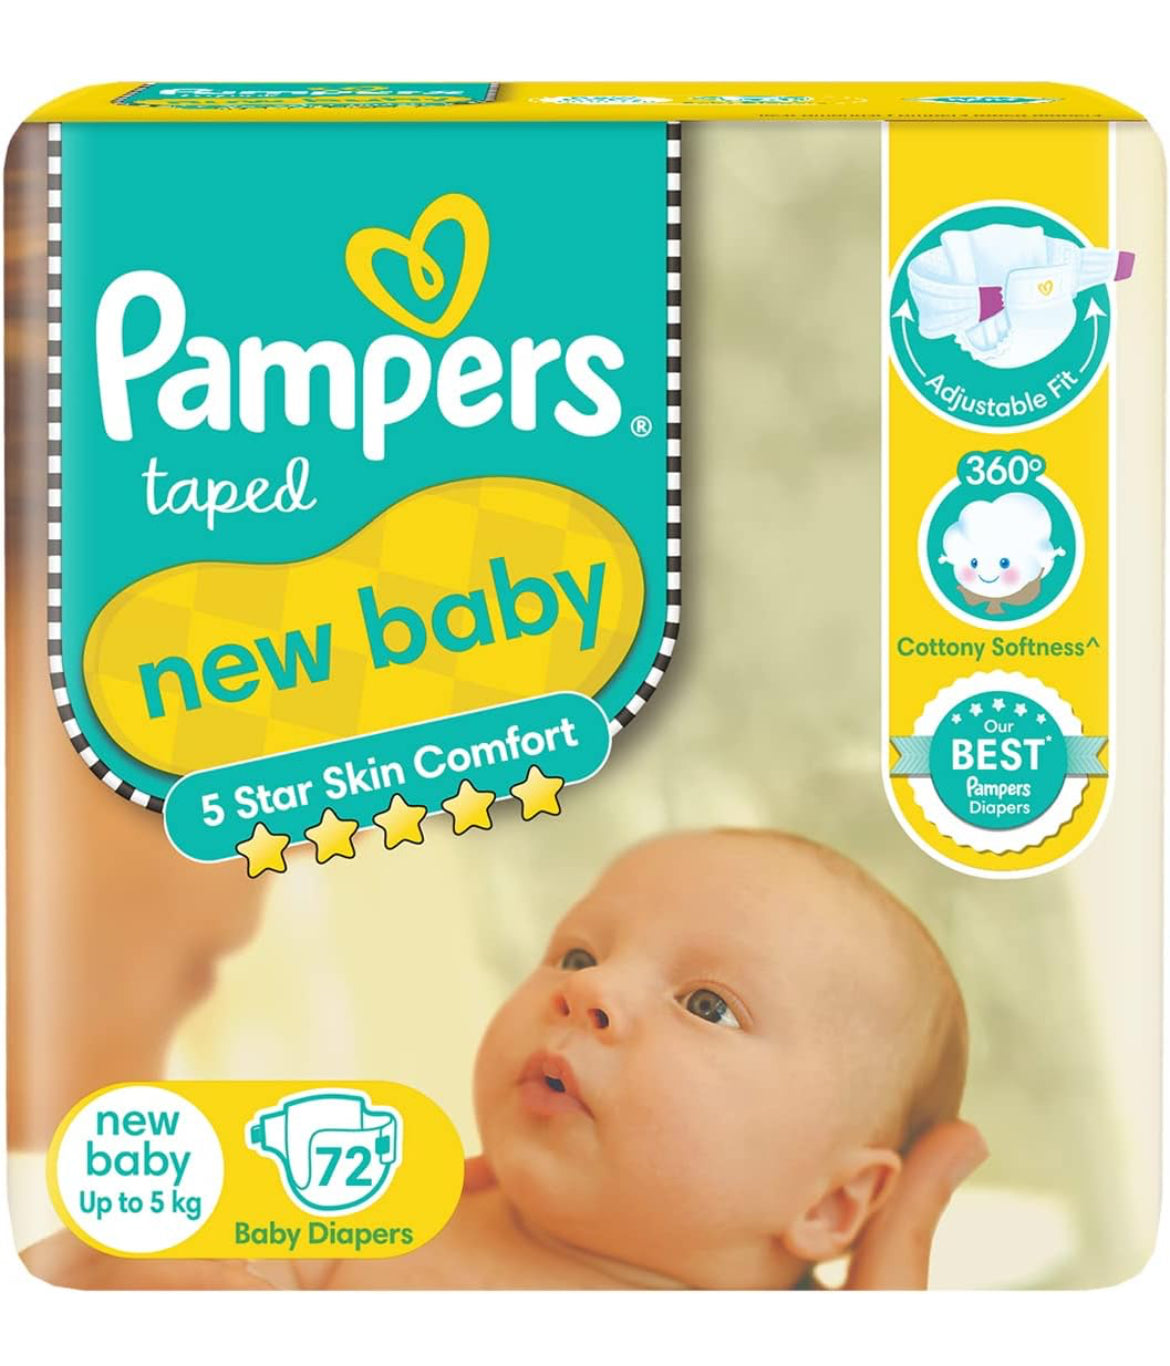 Pamper's active baby